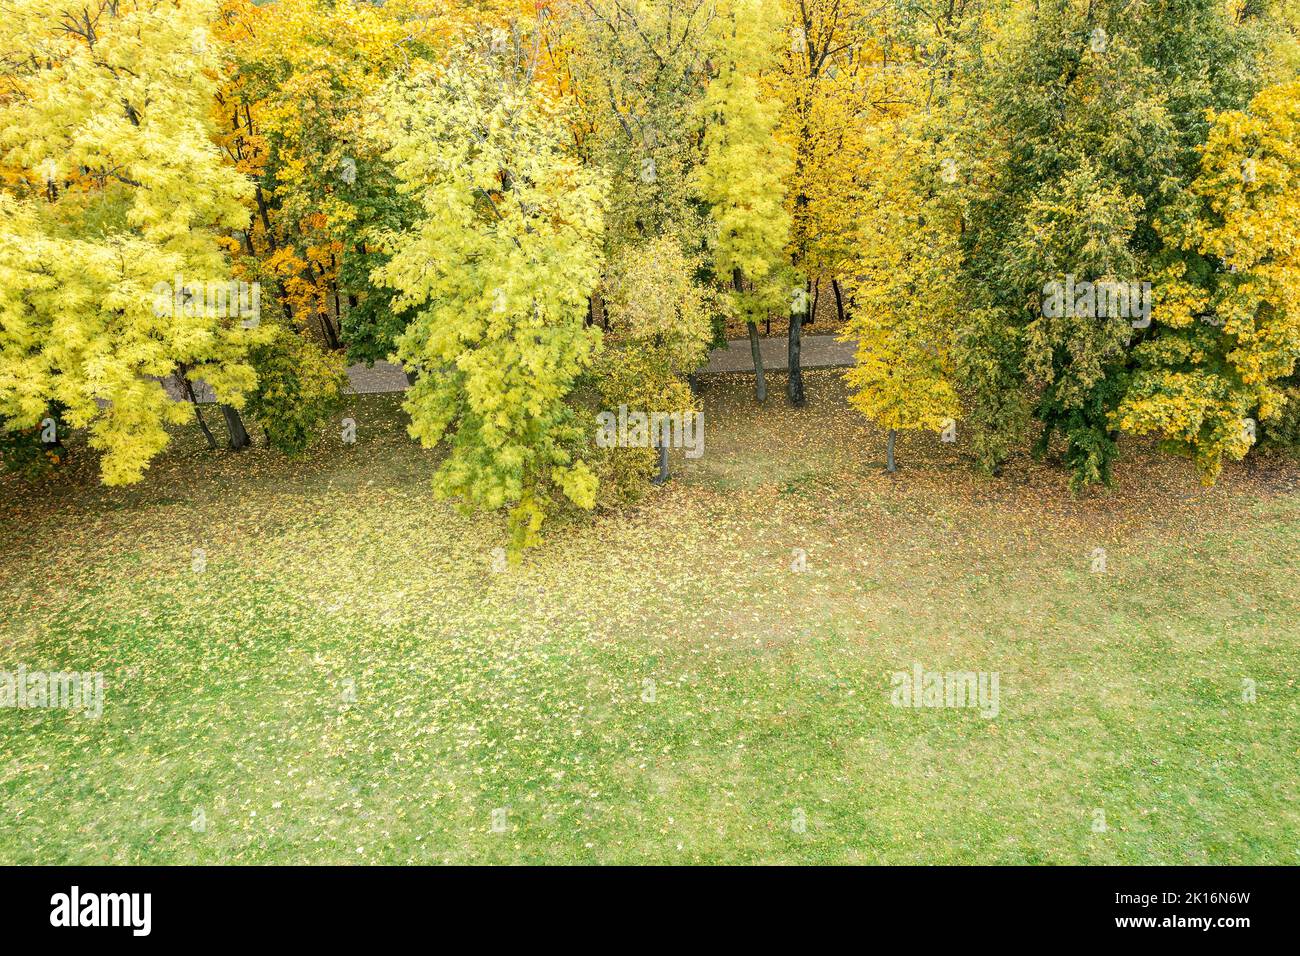 paisaje del parque de otoño en colores cálidos con césped verde cubierto de hojas caídas. vista aérea por encima de la cabeza. Foto de stock